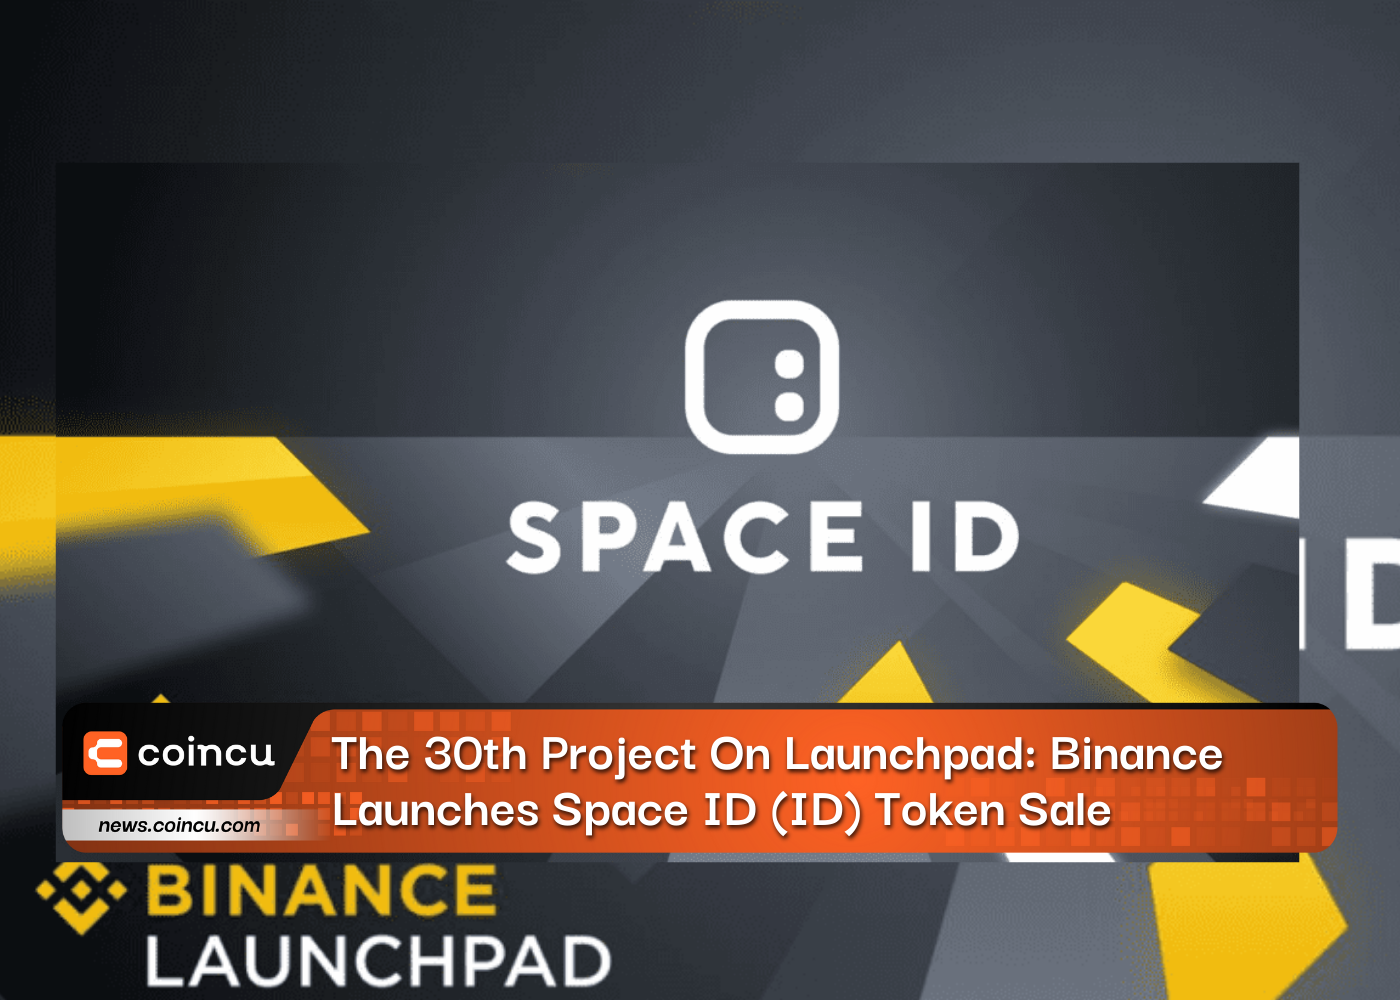 Le 30e projet sur Launchpad : Binance lance la vente de jetons Space ID (ID)